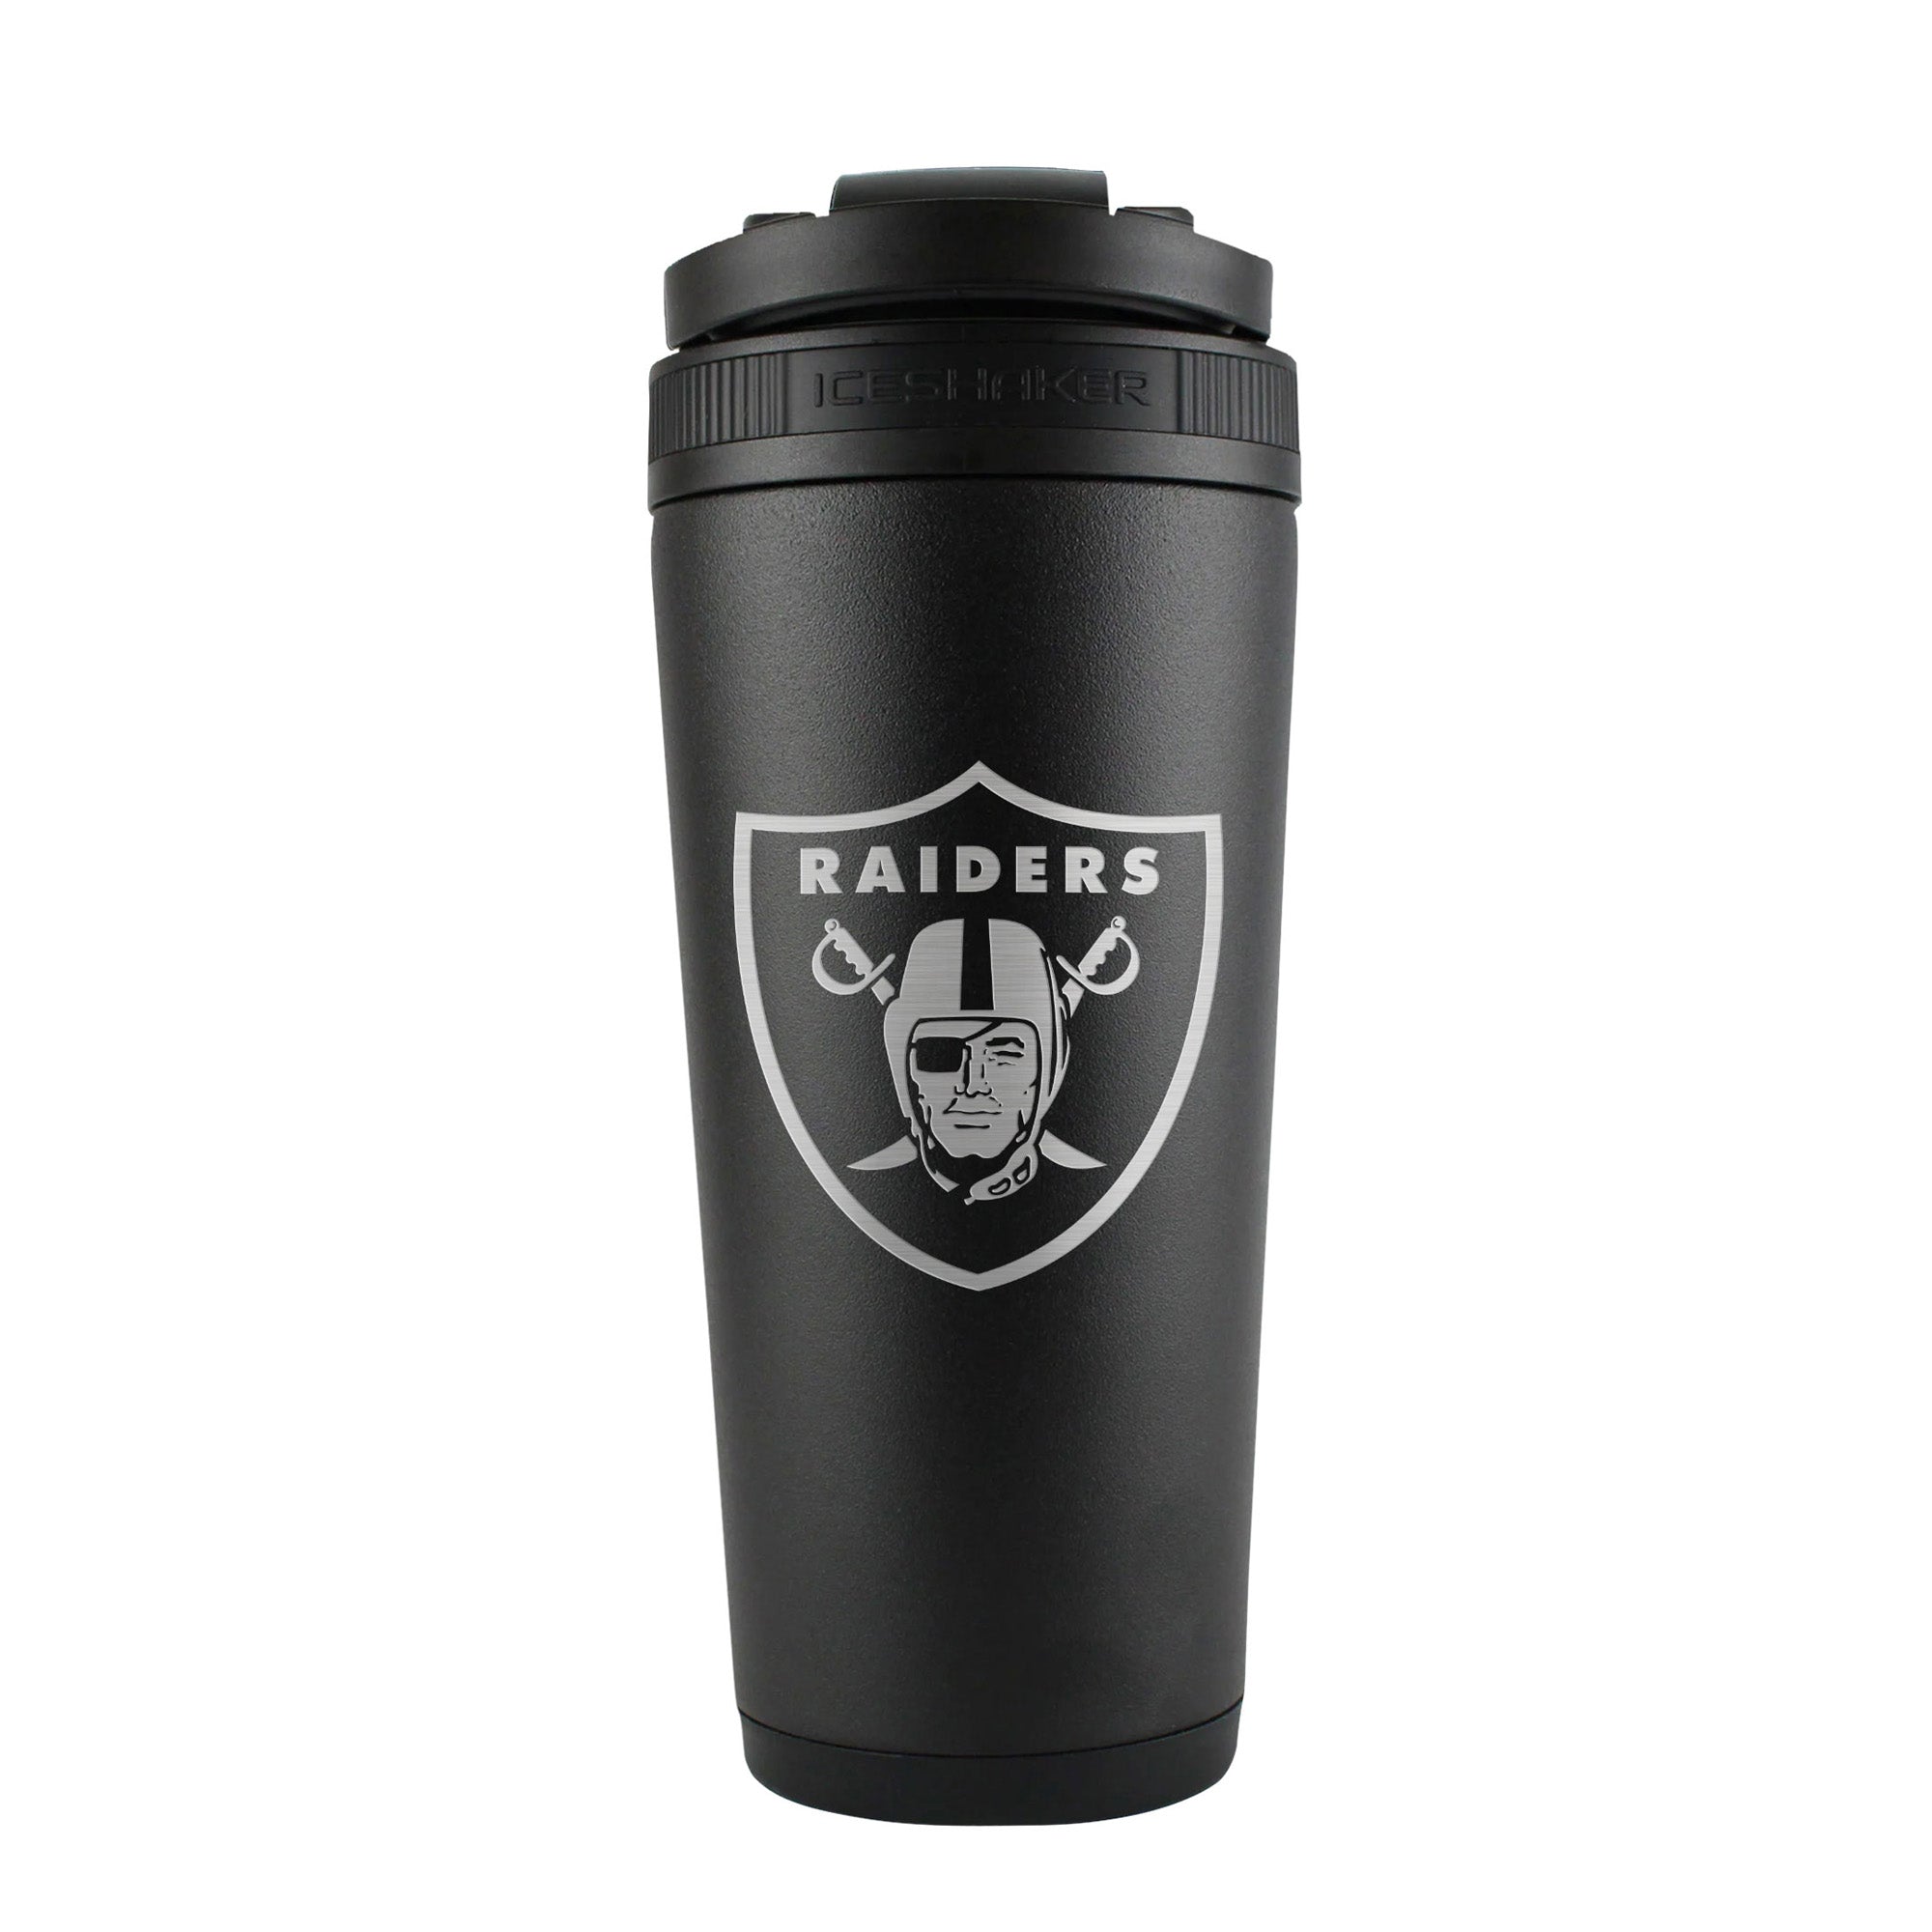 Las Vegas Raiders White 15oz. Personalized Mug